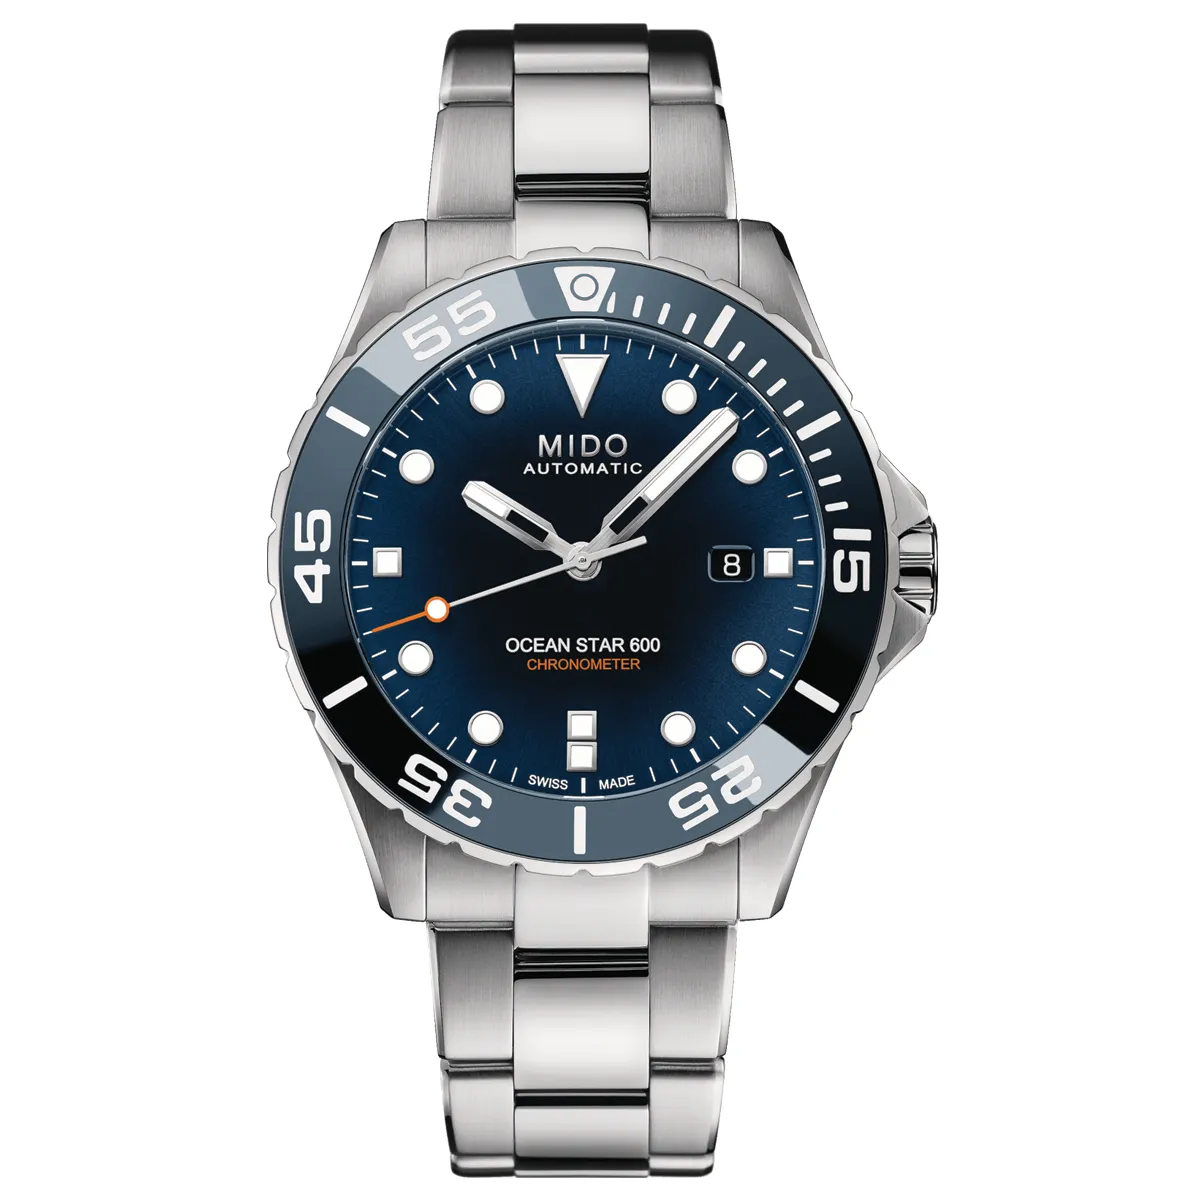 Đồng hồ Mido Ocean Star 600 Chronometer M026.608.11.041.01 mặt số màu xanh. Dây đeo bằng thép. Thân vỏ bằng thép.